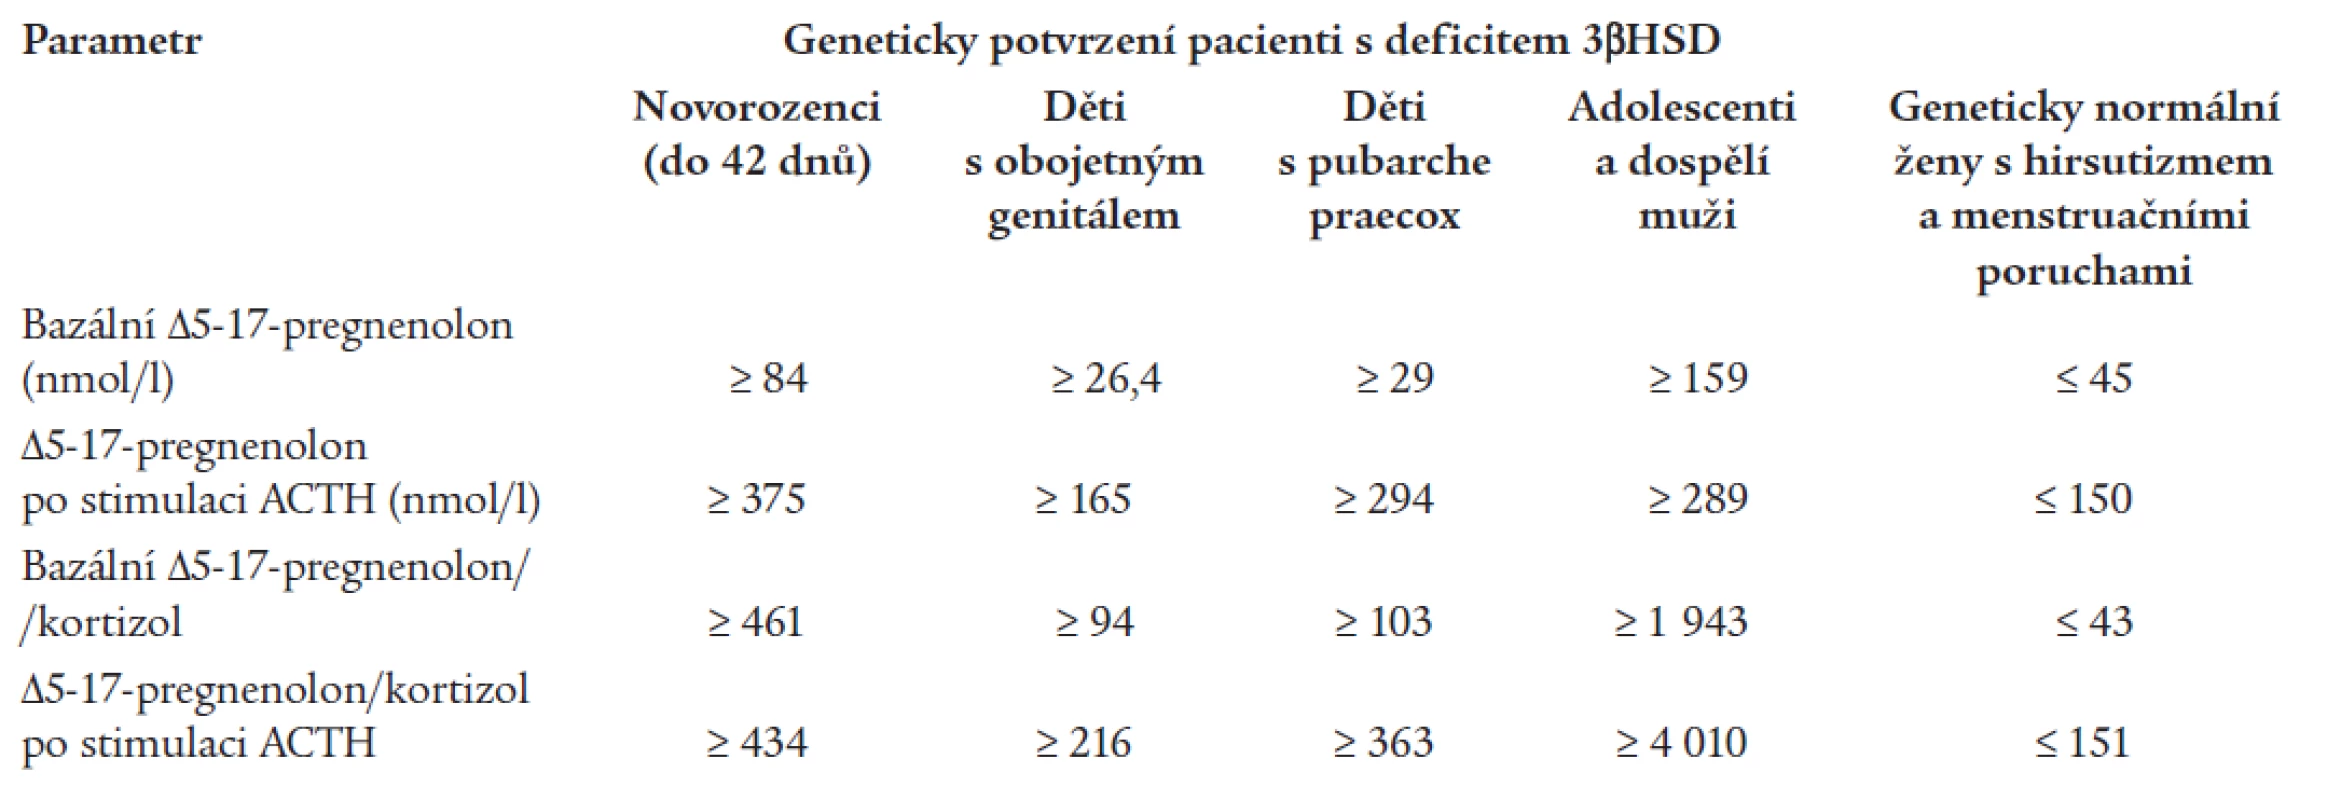 Navržená hormonální kritéria pro diagnostiku 3β-HSD deficience podle věkových skupin podle Lutfallaha (10).